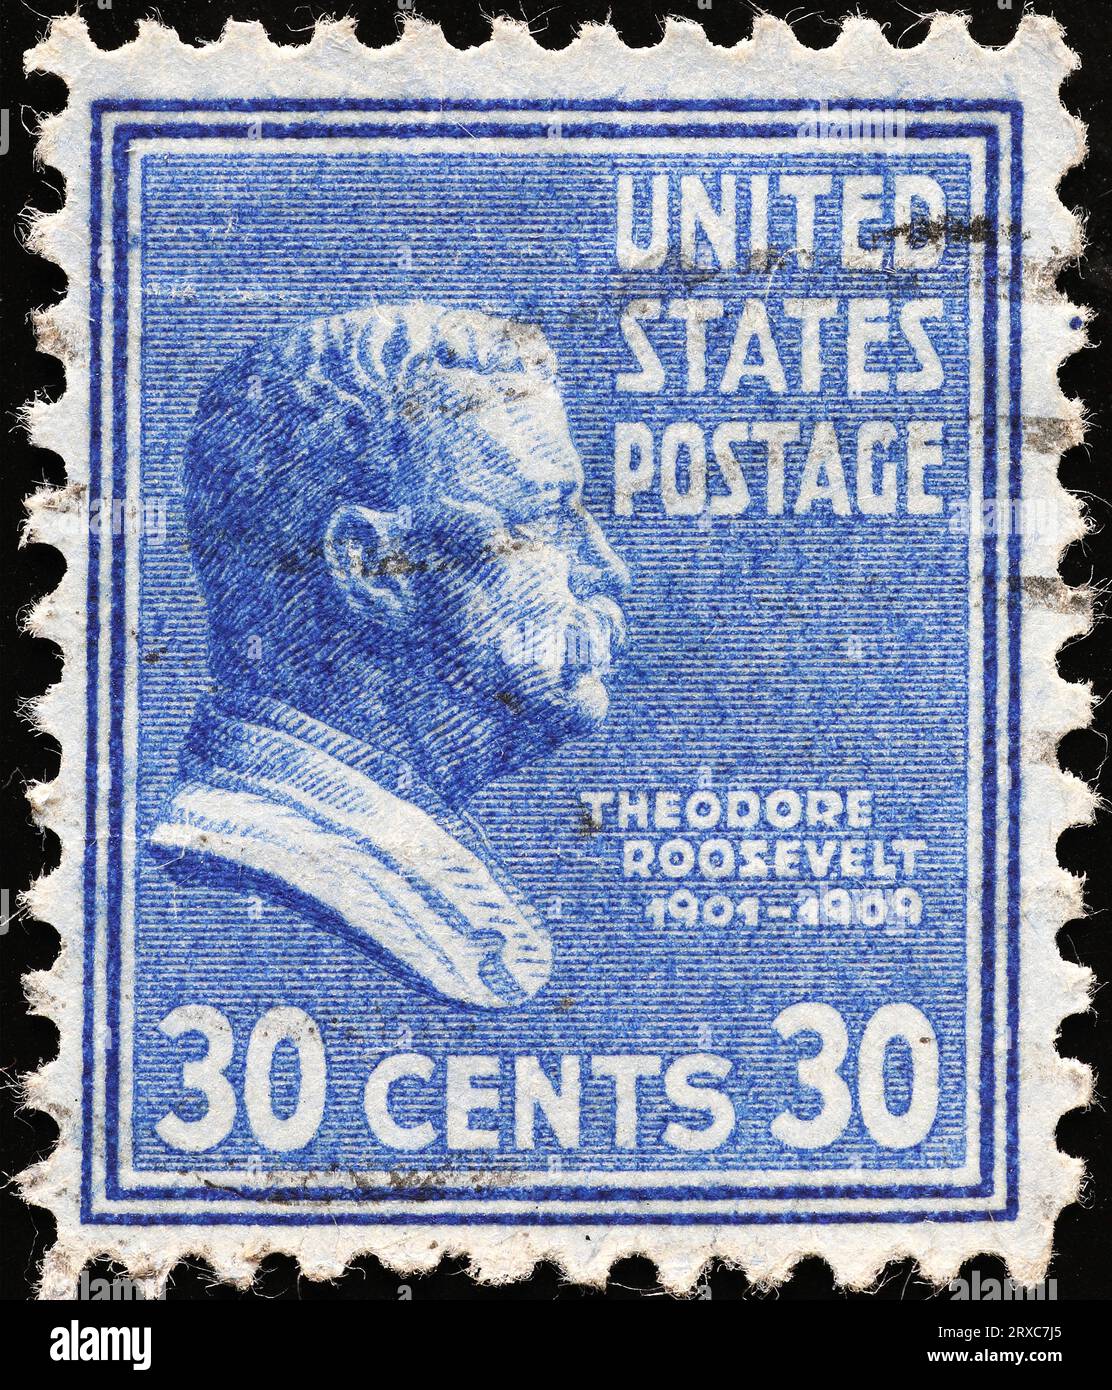 US President Theodore Rooosevelt on vintage postage stamp Stock Photo